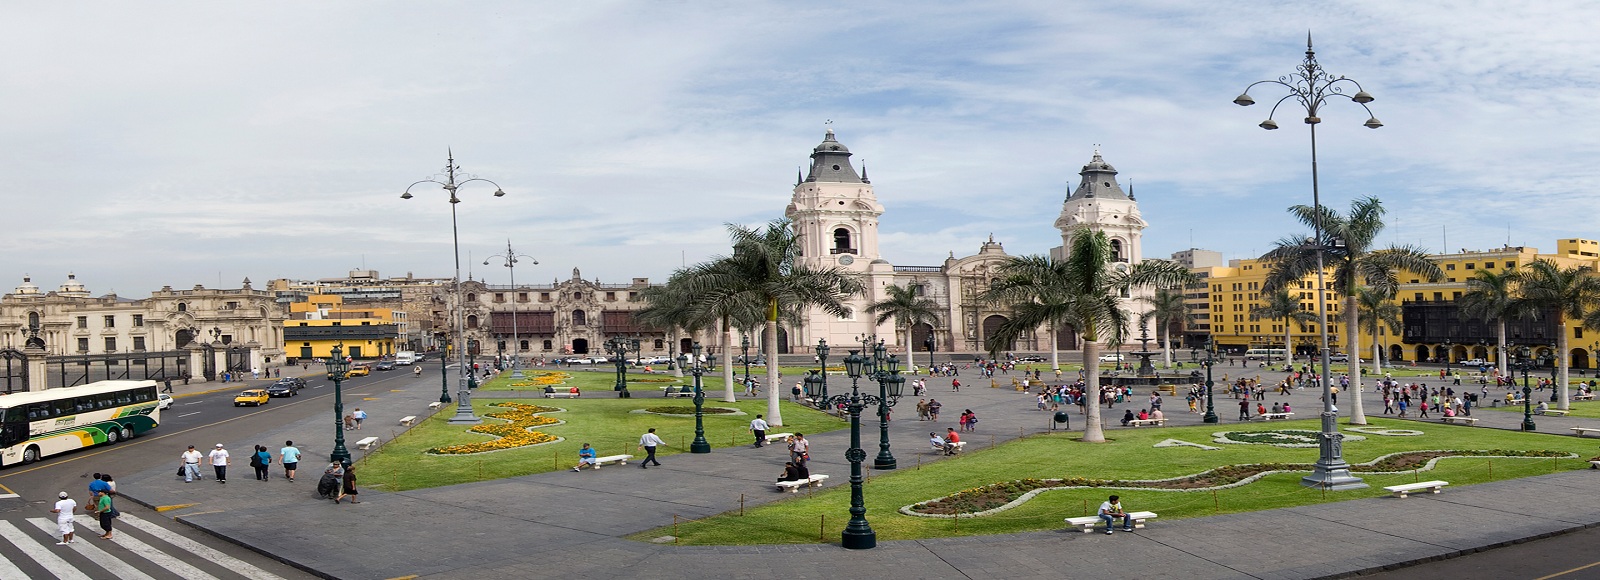 Ofertas de Traslados en Perú. Traslados económicos en Perú 